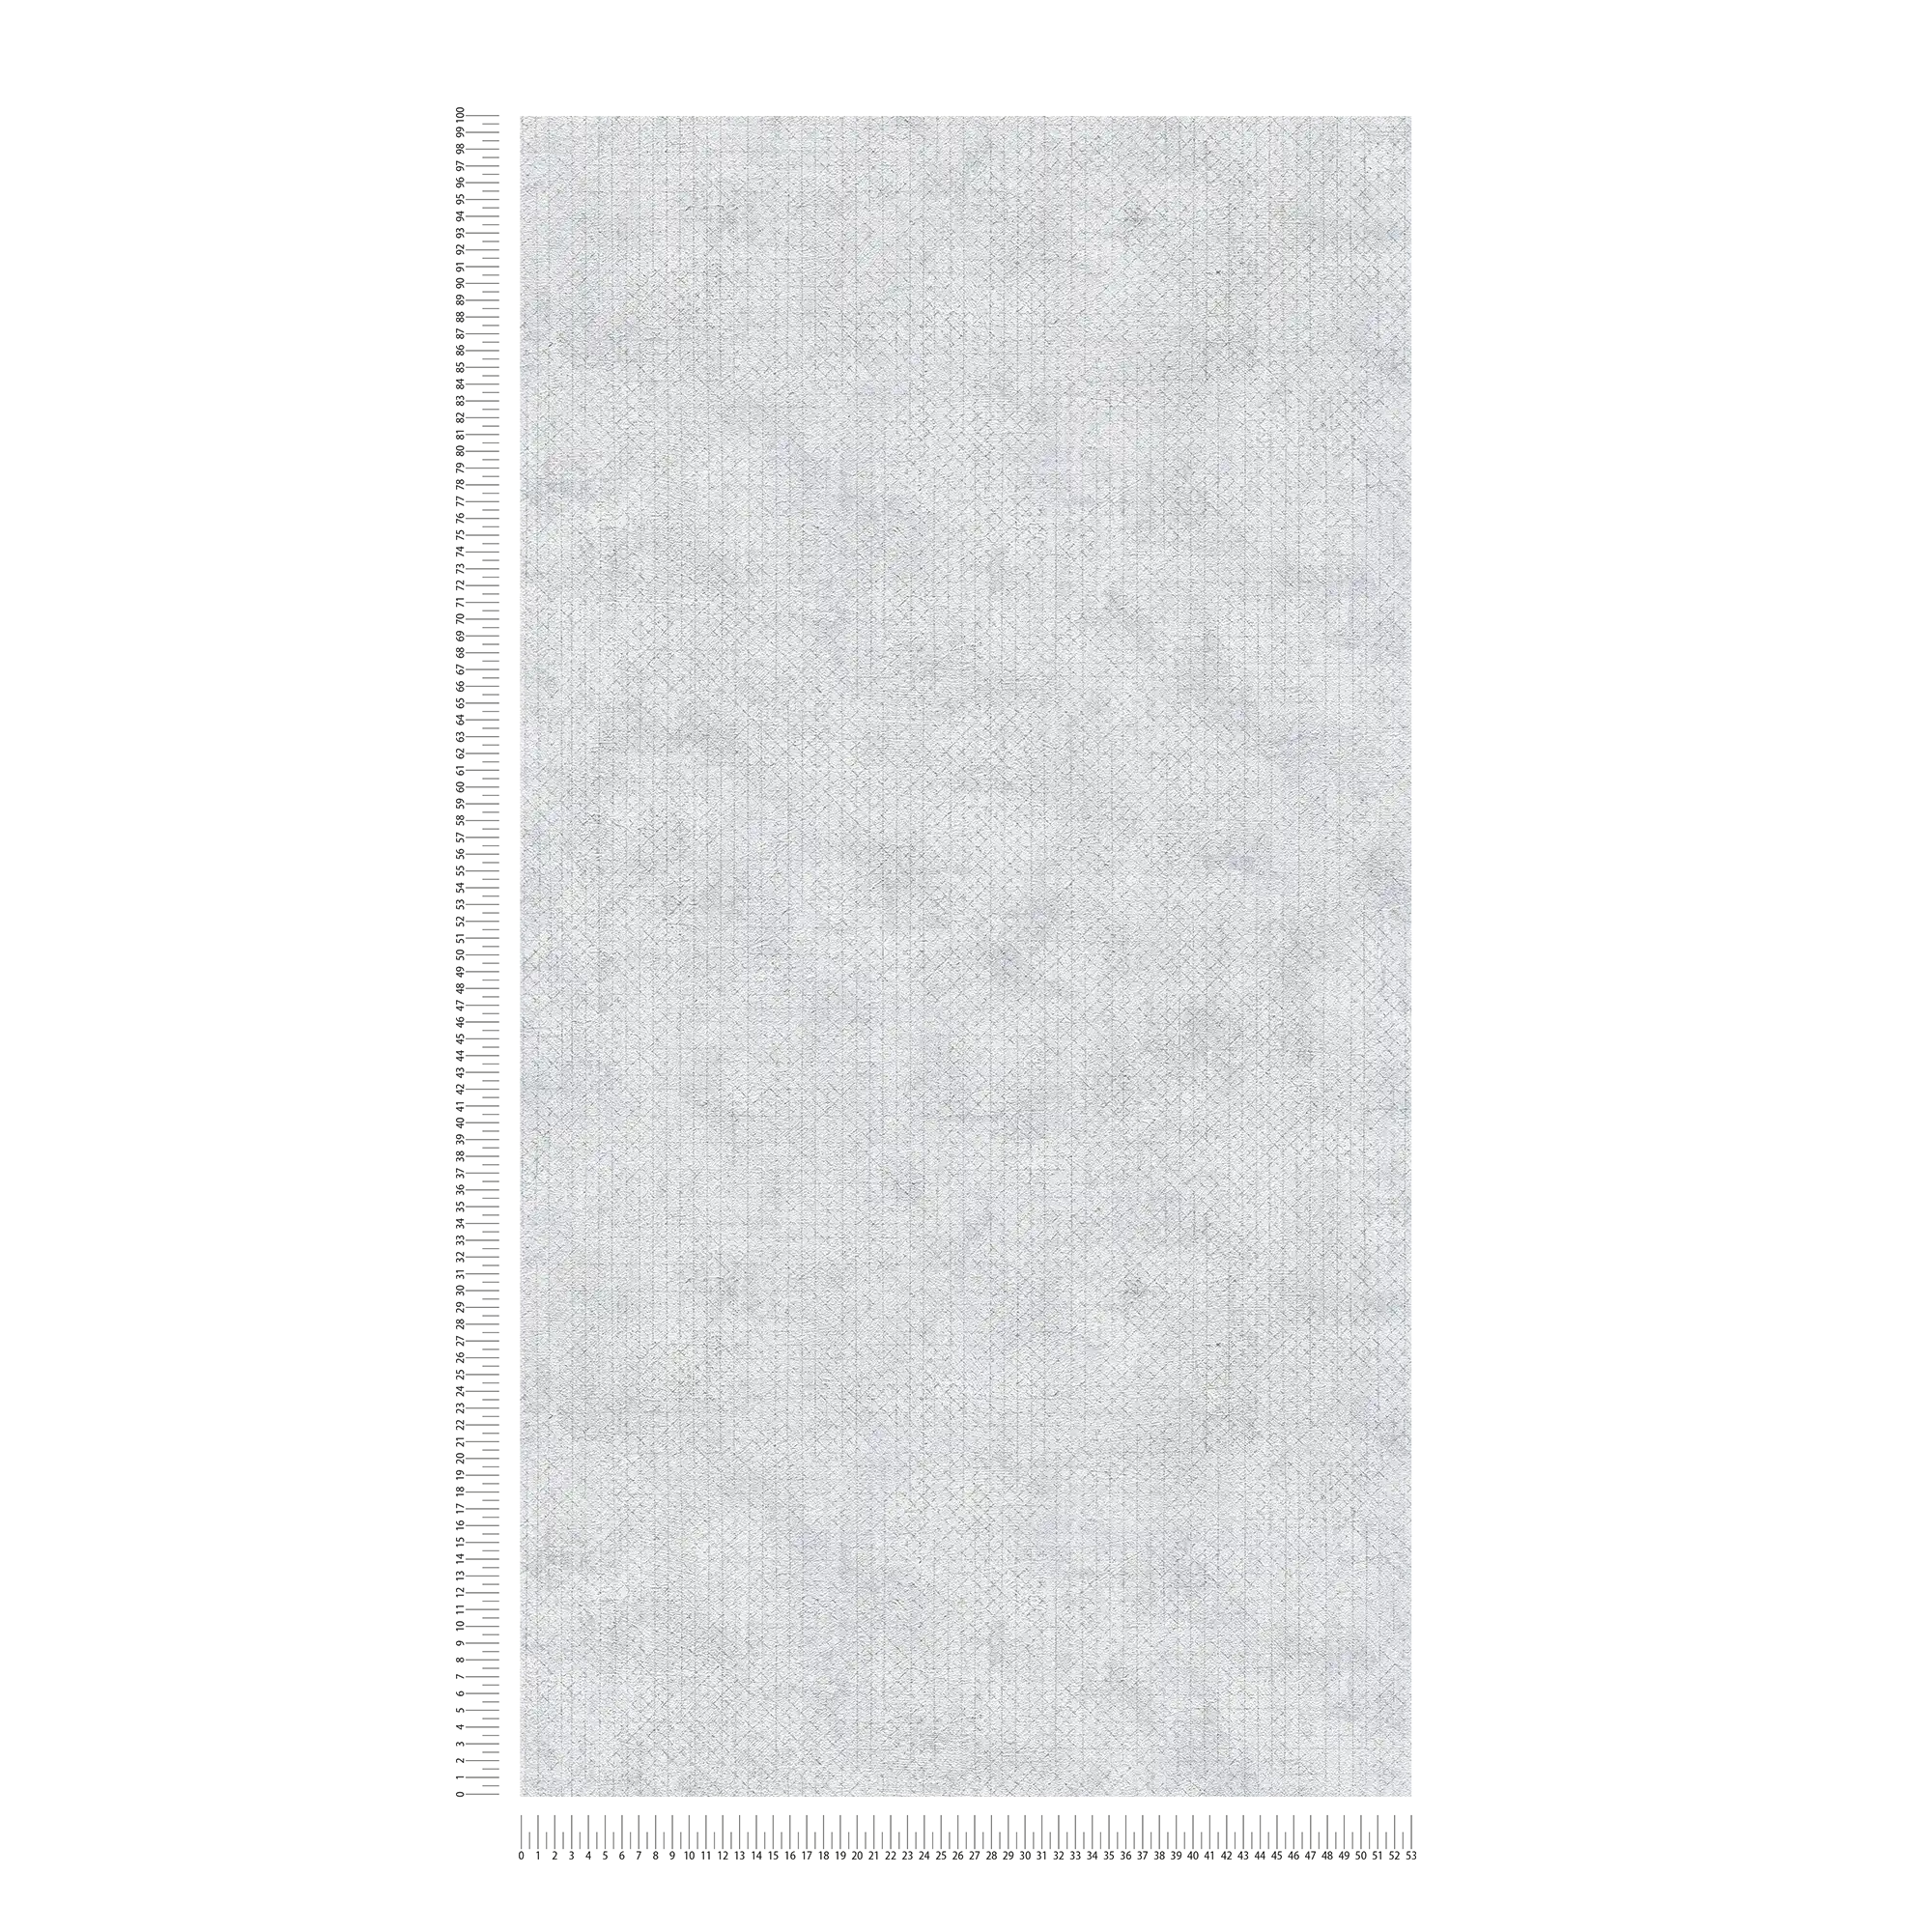             Carta da parati in tessuto non tessuto grigio chiaro con motivo metallico - Metallic, Grigio
        